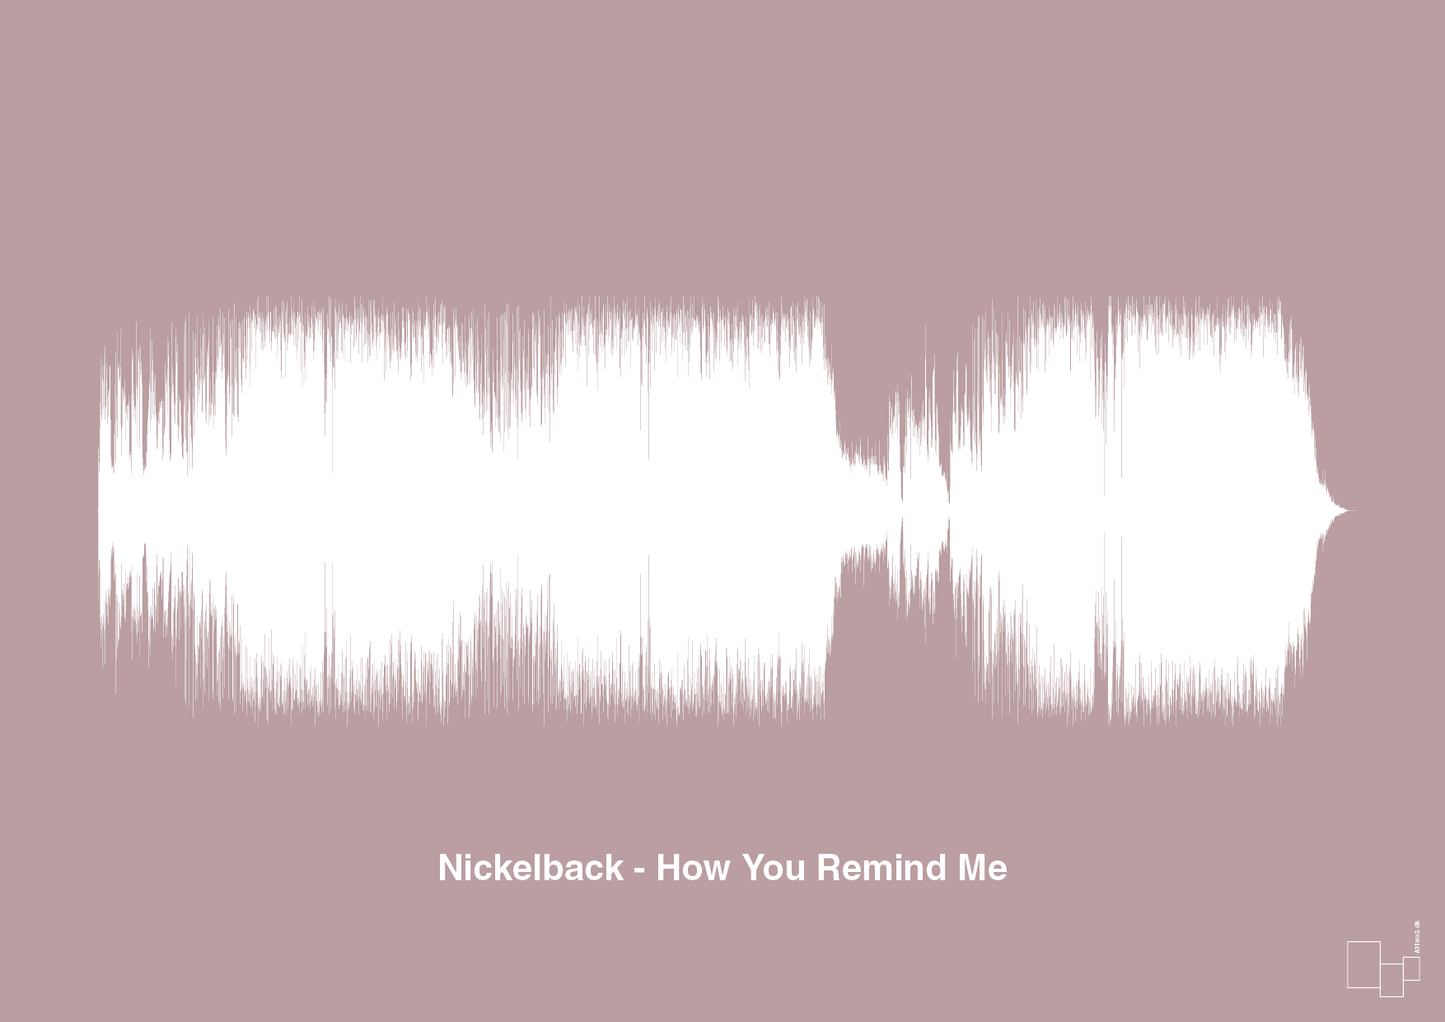 nickelback - how you remind me - Plakat med Musik i Light Rose